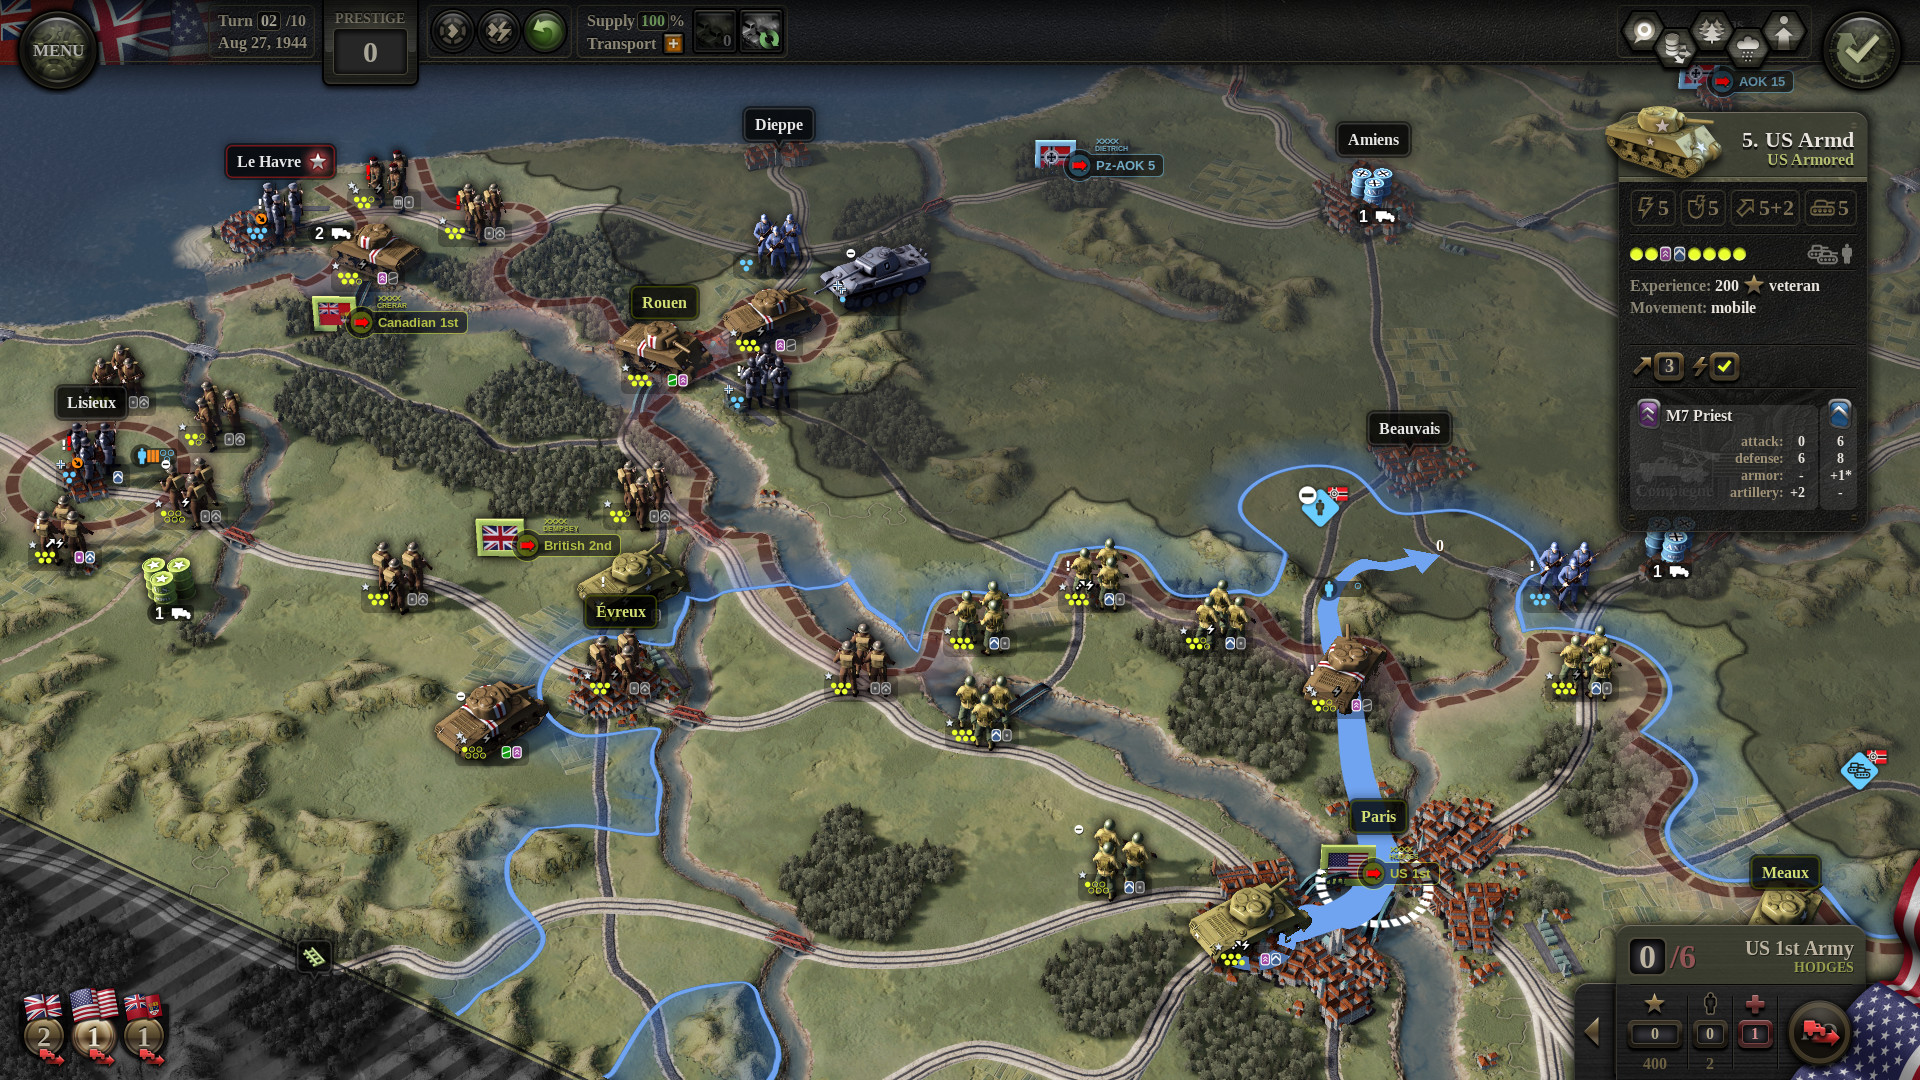 Melhores Jogos de Guerra: Unidade de Comando 2. A imagem mostra um mapa com várias rotas estratégicas e soldados dispostos nela